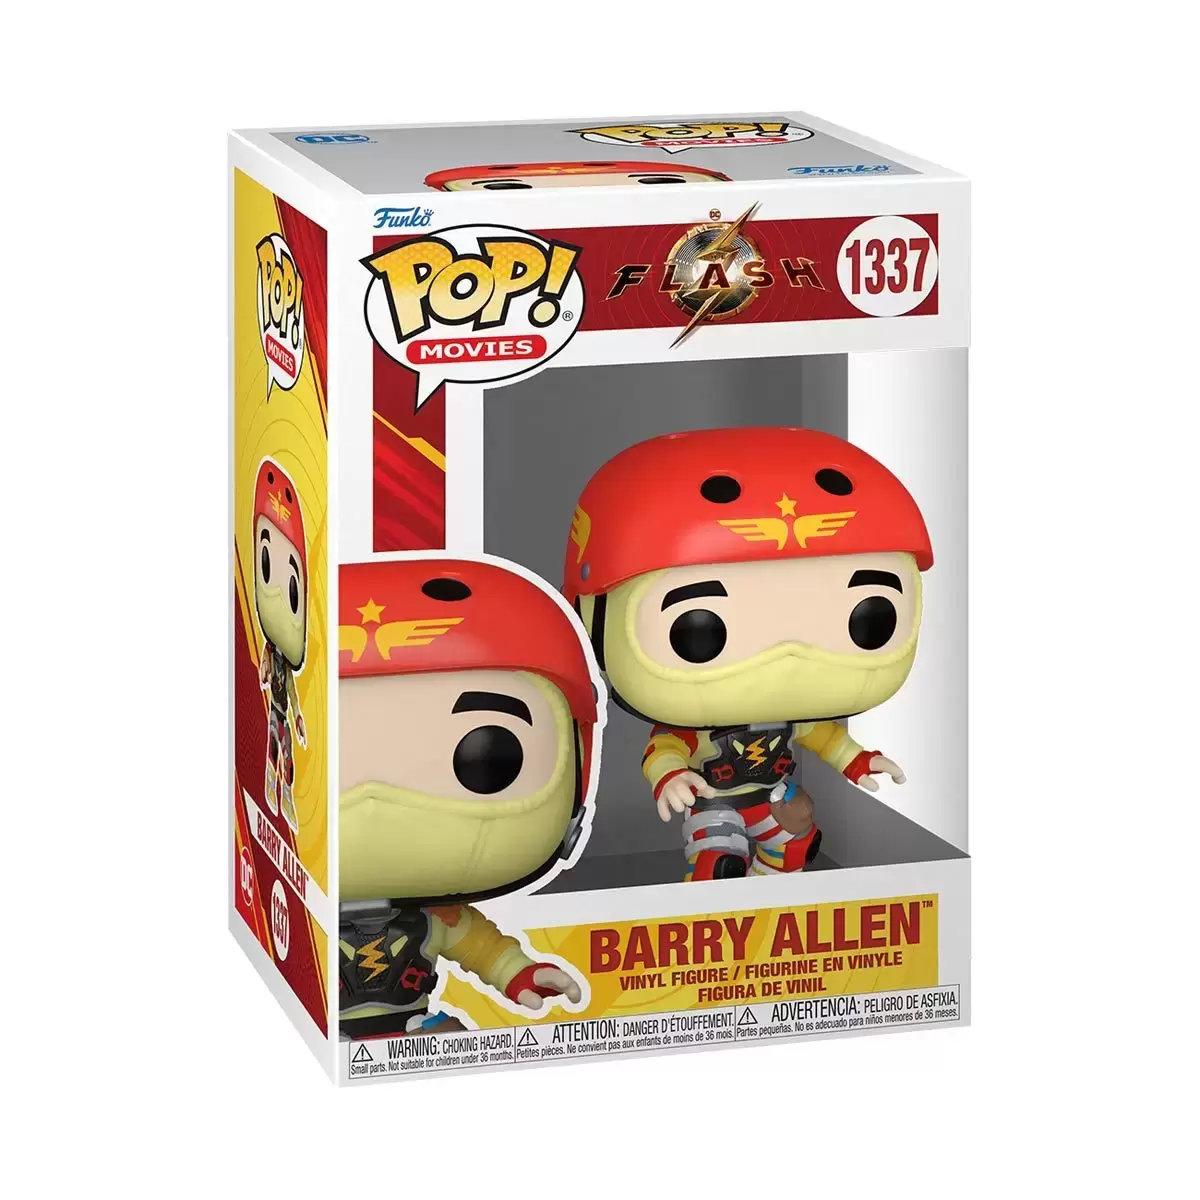 POP! Movies - Flash Movie - Barry Allen